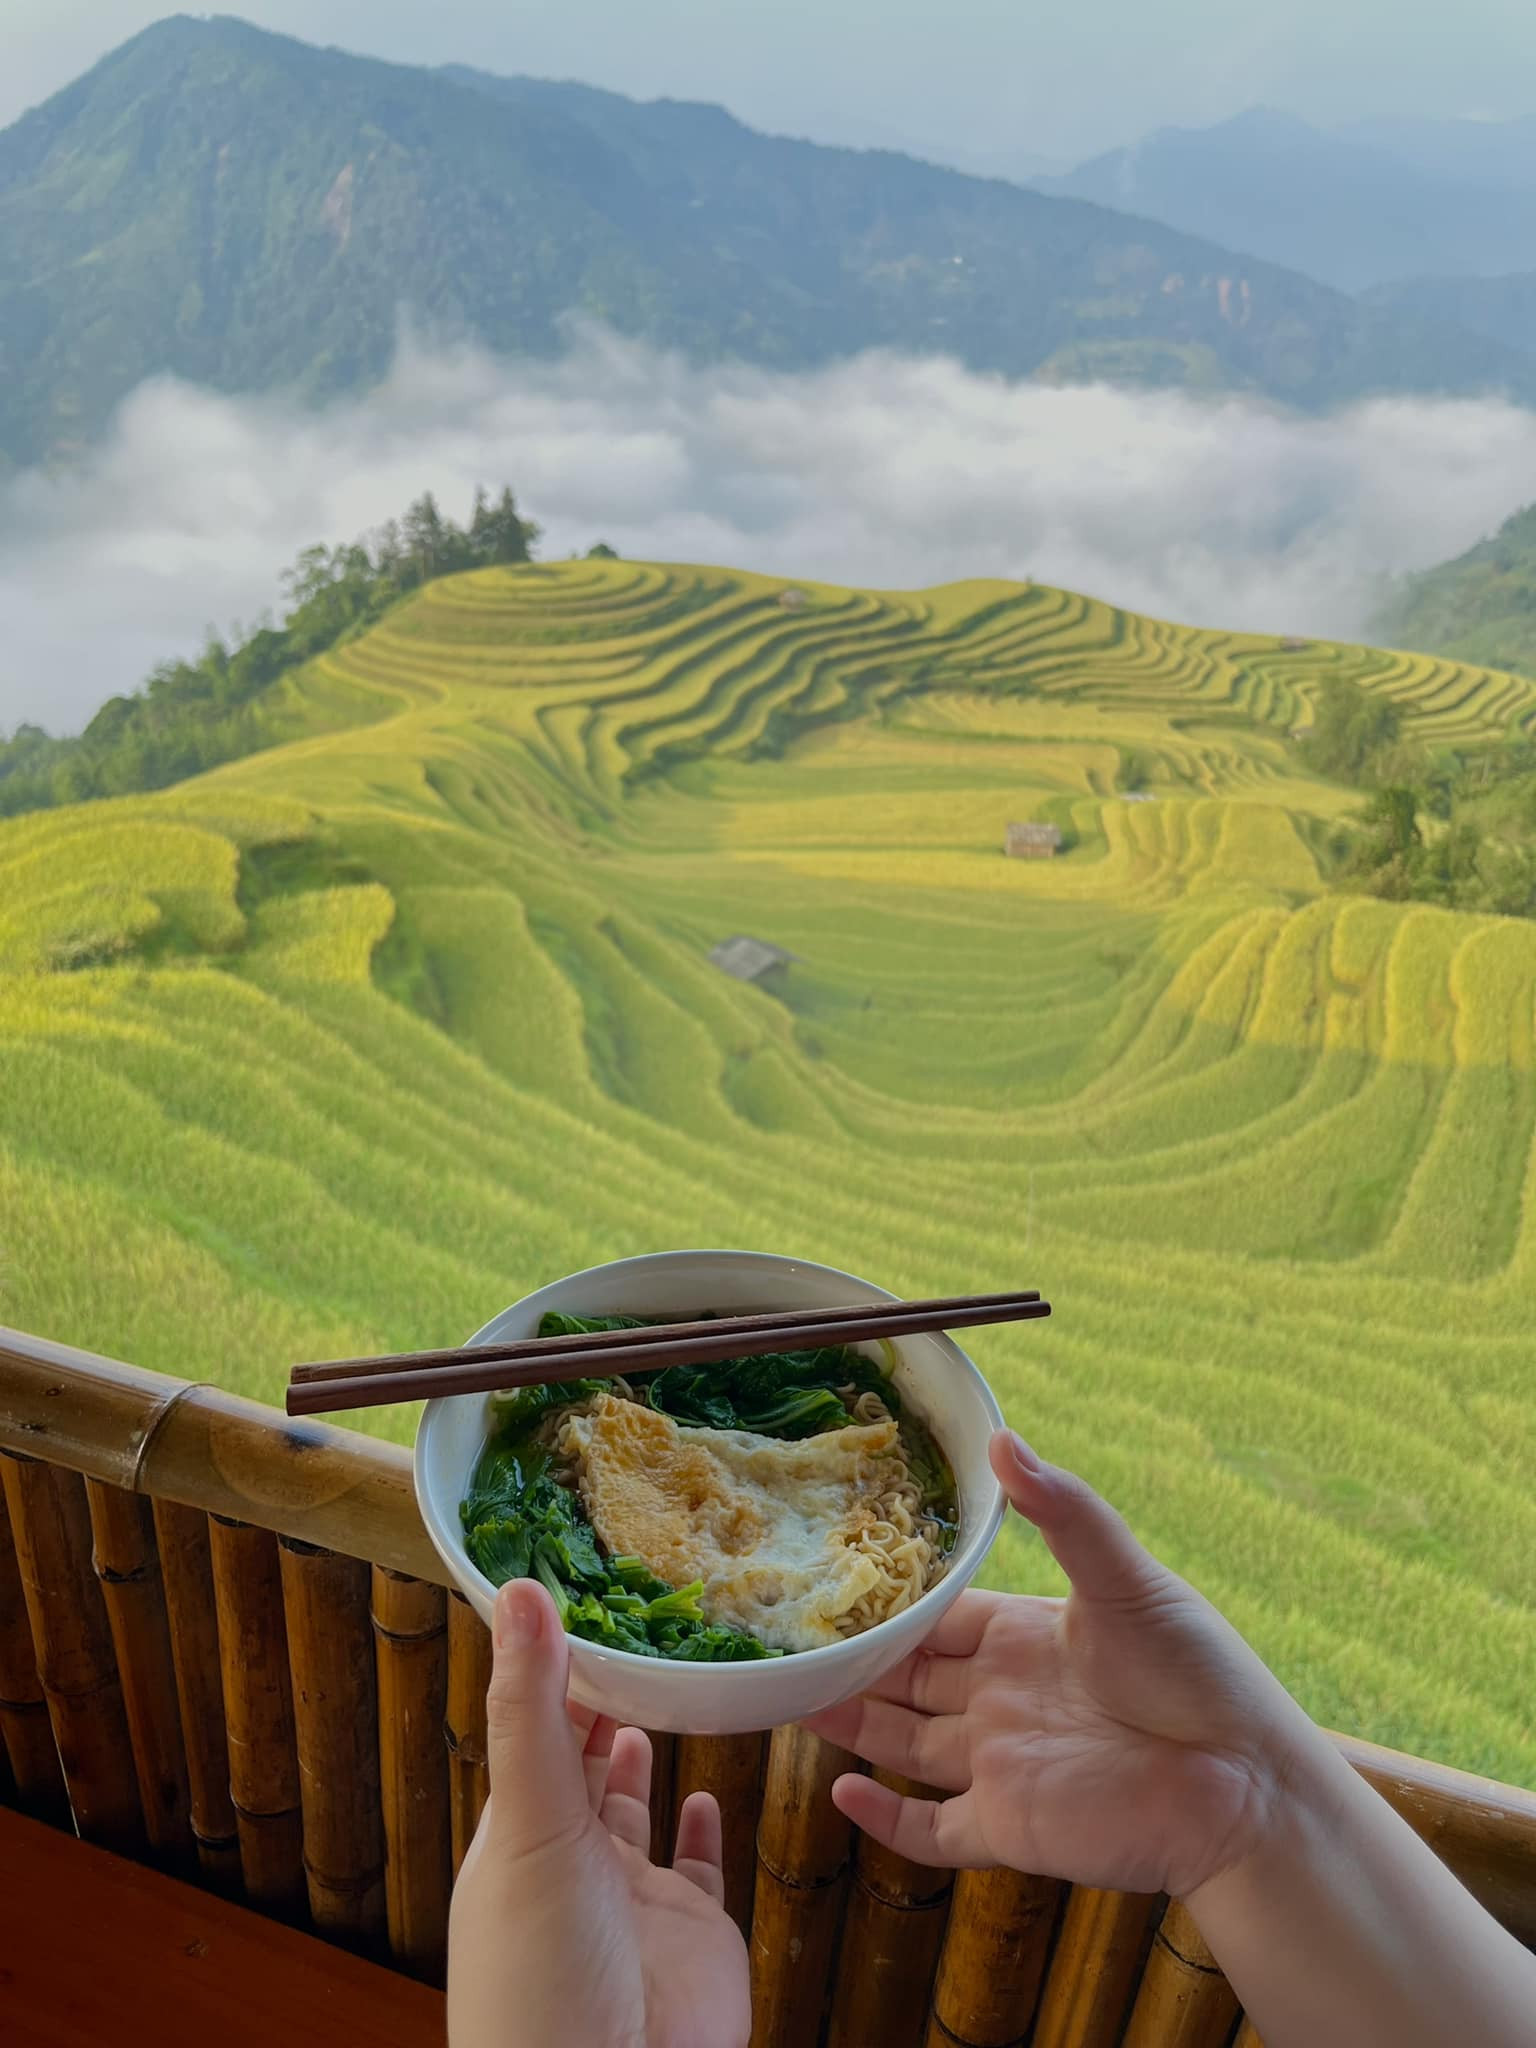 Trào lưu khoe ảnh ăn mì tại những địa điểm đẹp nhất Việt Nam - 1